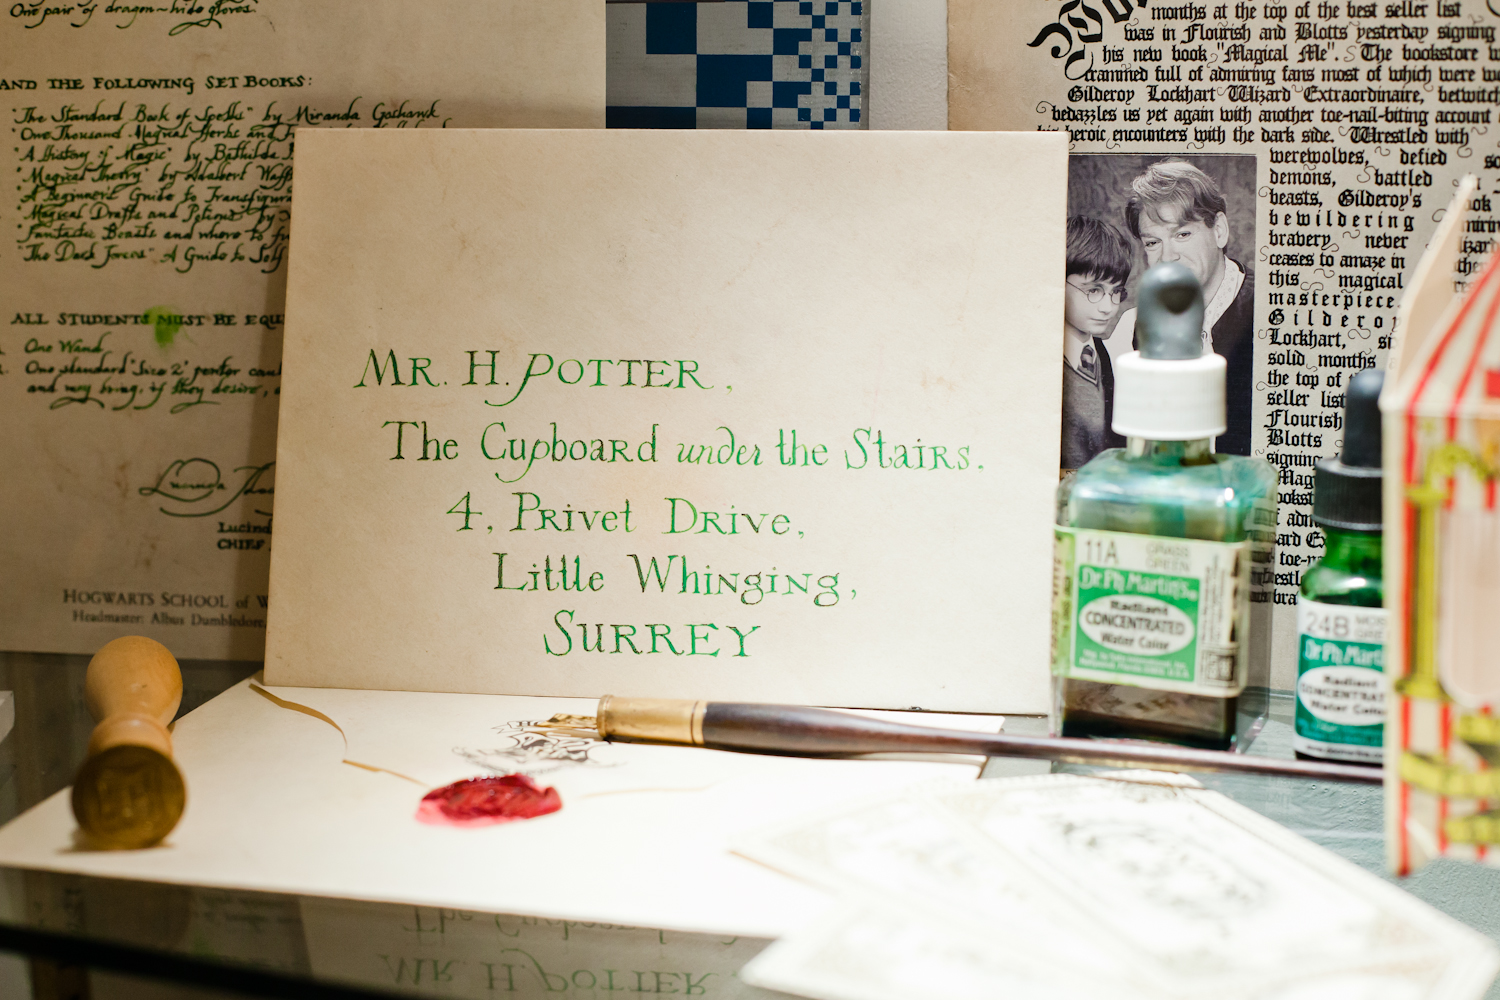 Harry Potter's Hogwarts acceptance letter